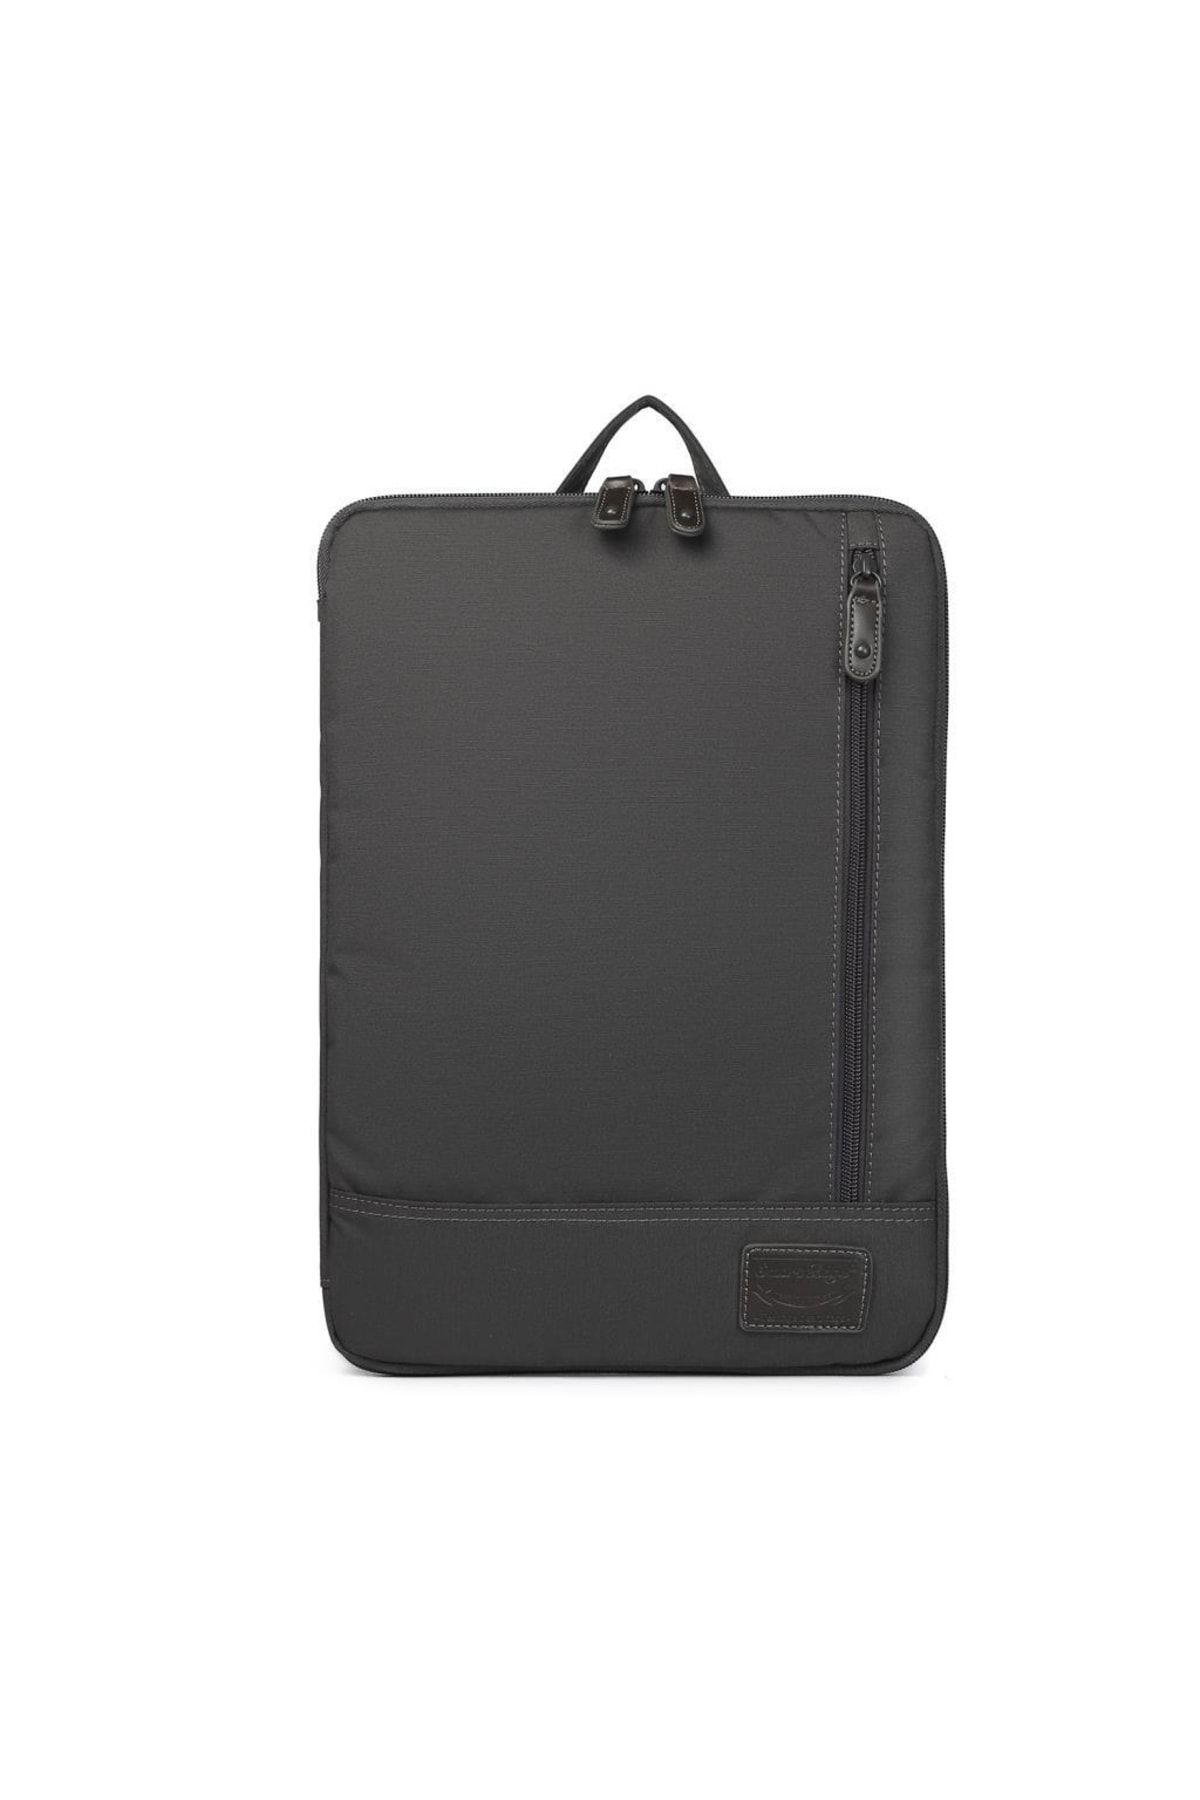 Smart Bags 31,5cm X 22cm Cihaz Için Laptop Kılıfı Uniseks 3192